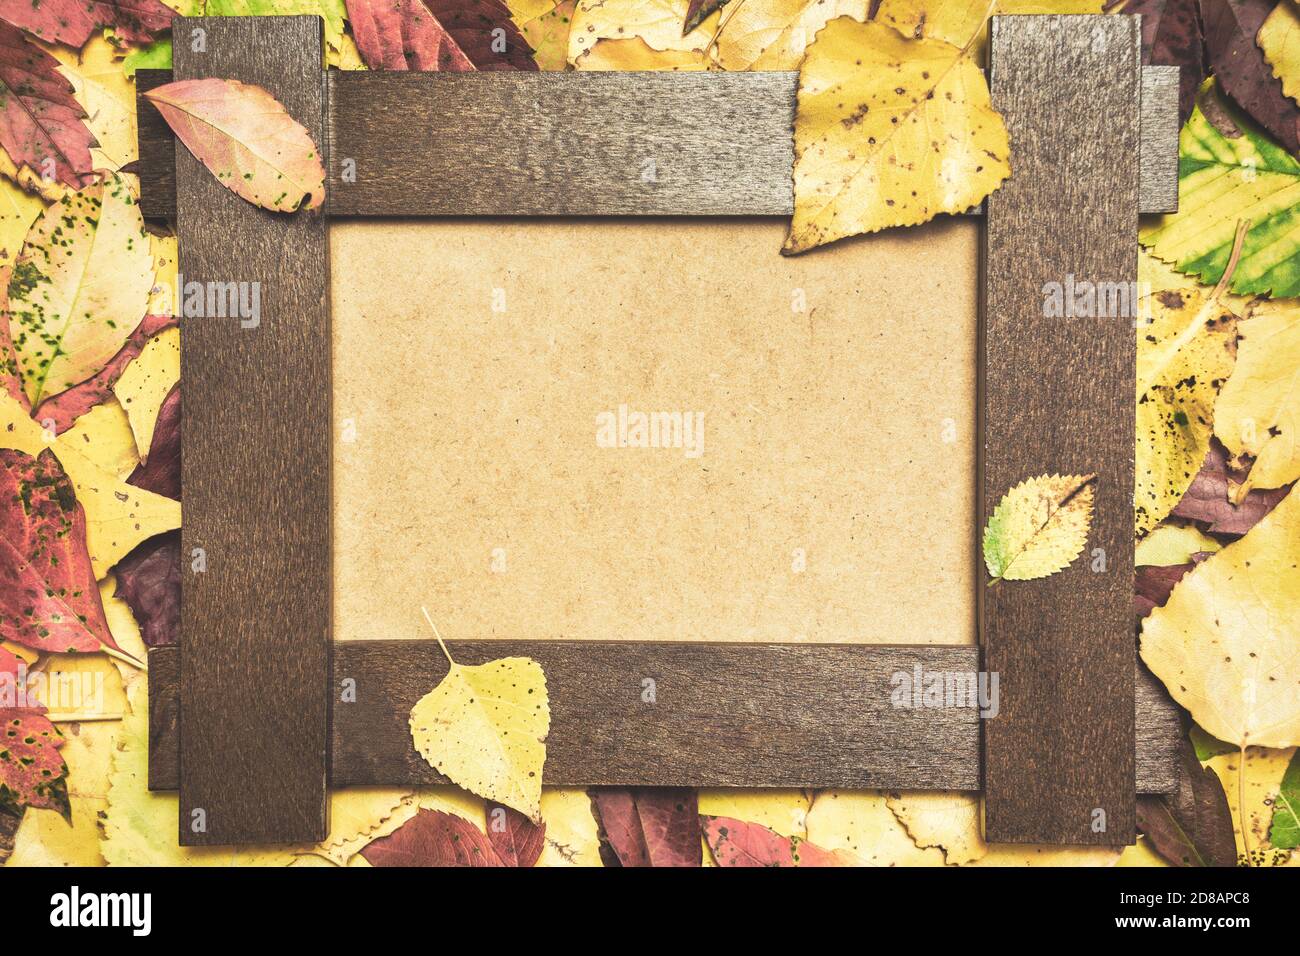 Composition automnale composée de feuilles colorées et d'un cadre photo vierge. Automne, automne concept. Flat lay, vue de dessus, espace de copie. Banque D'Images